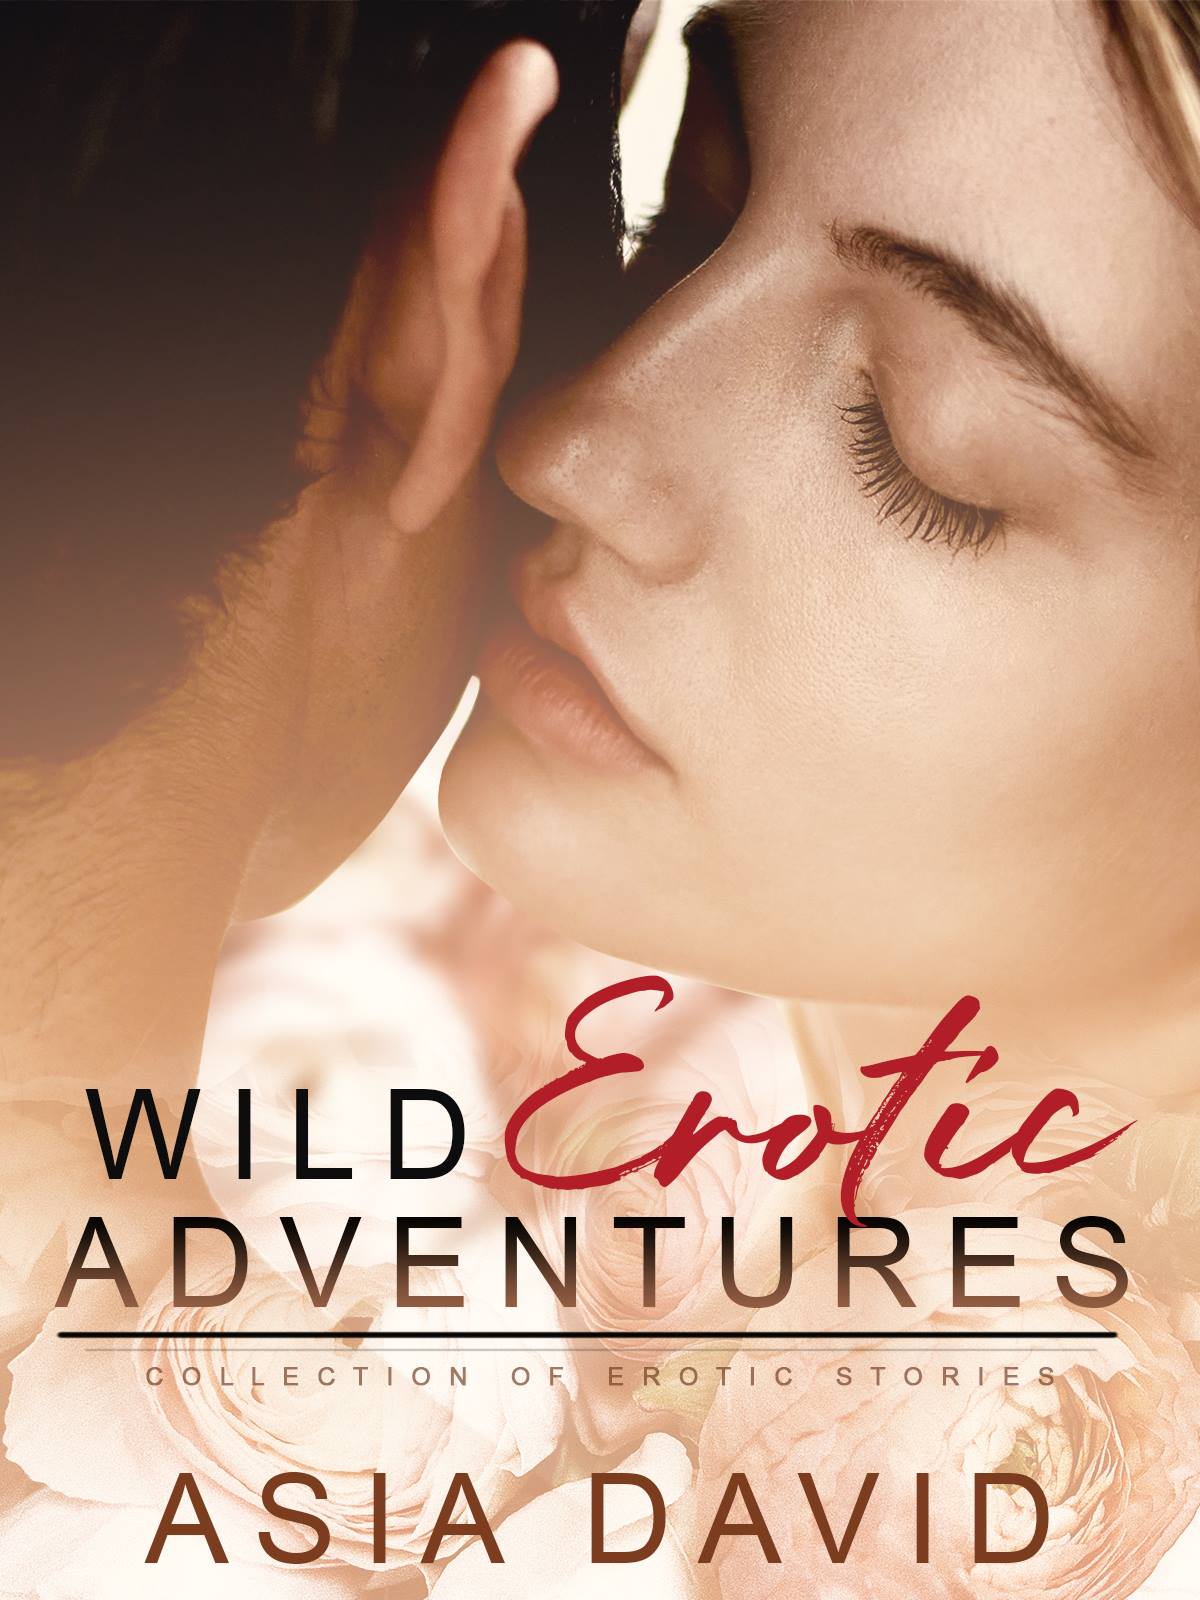 Wild erotic